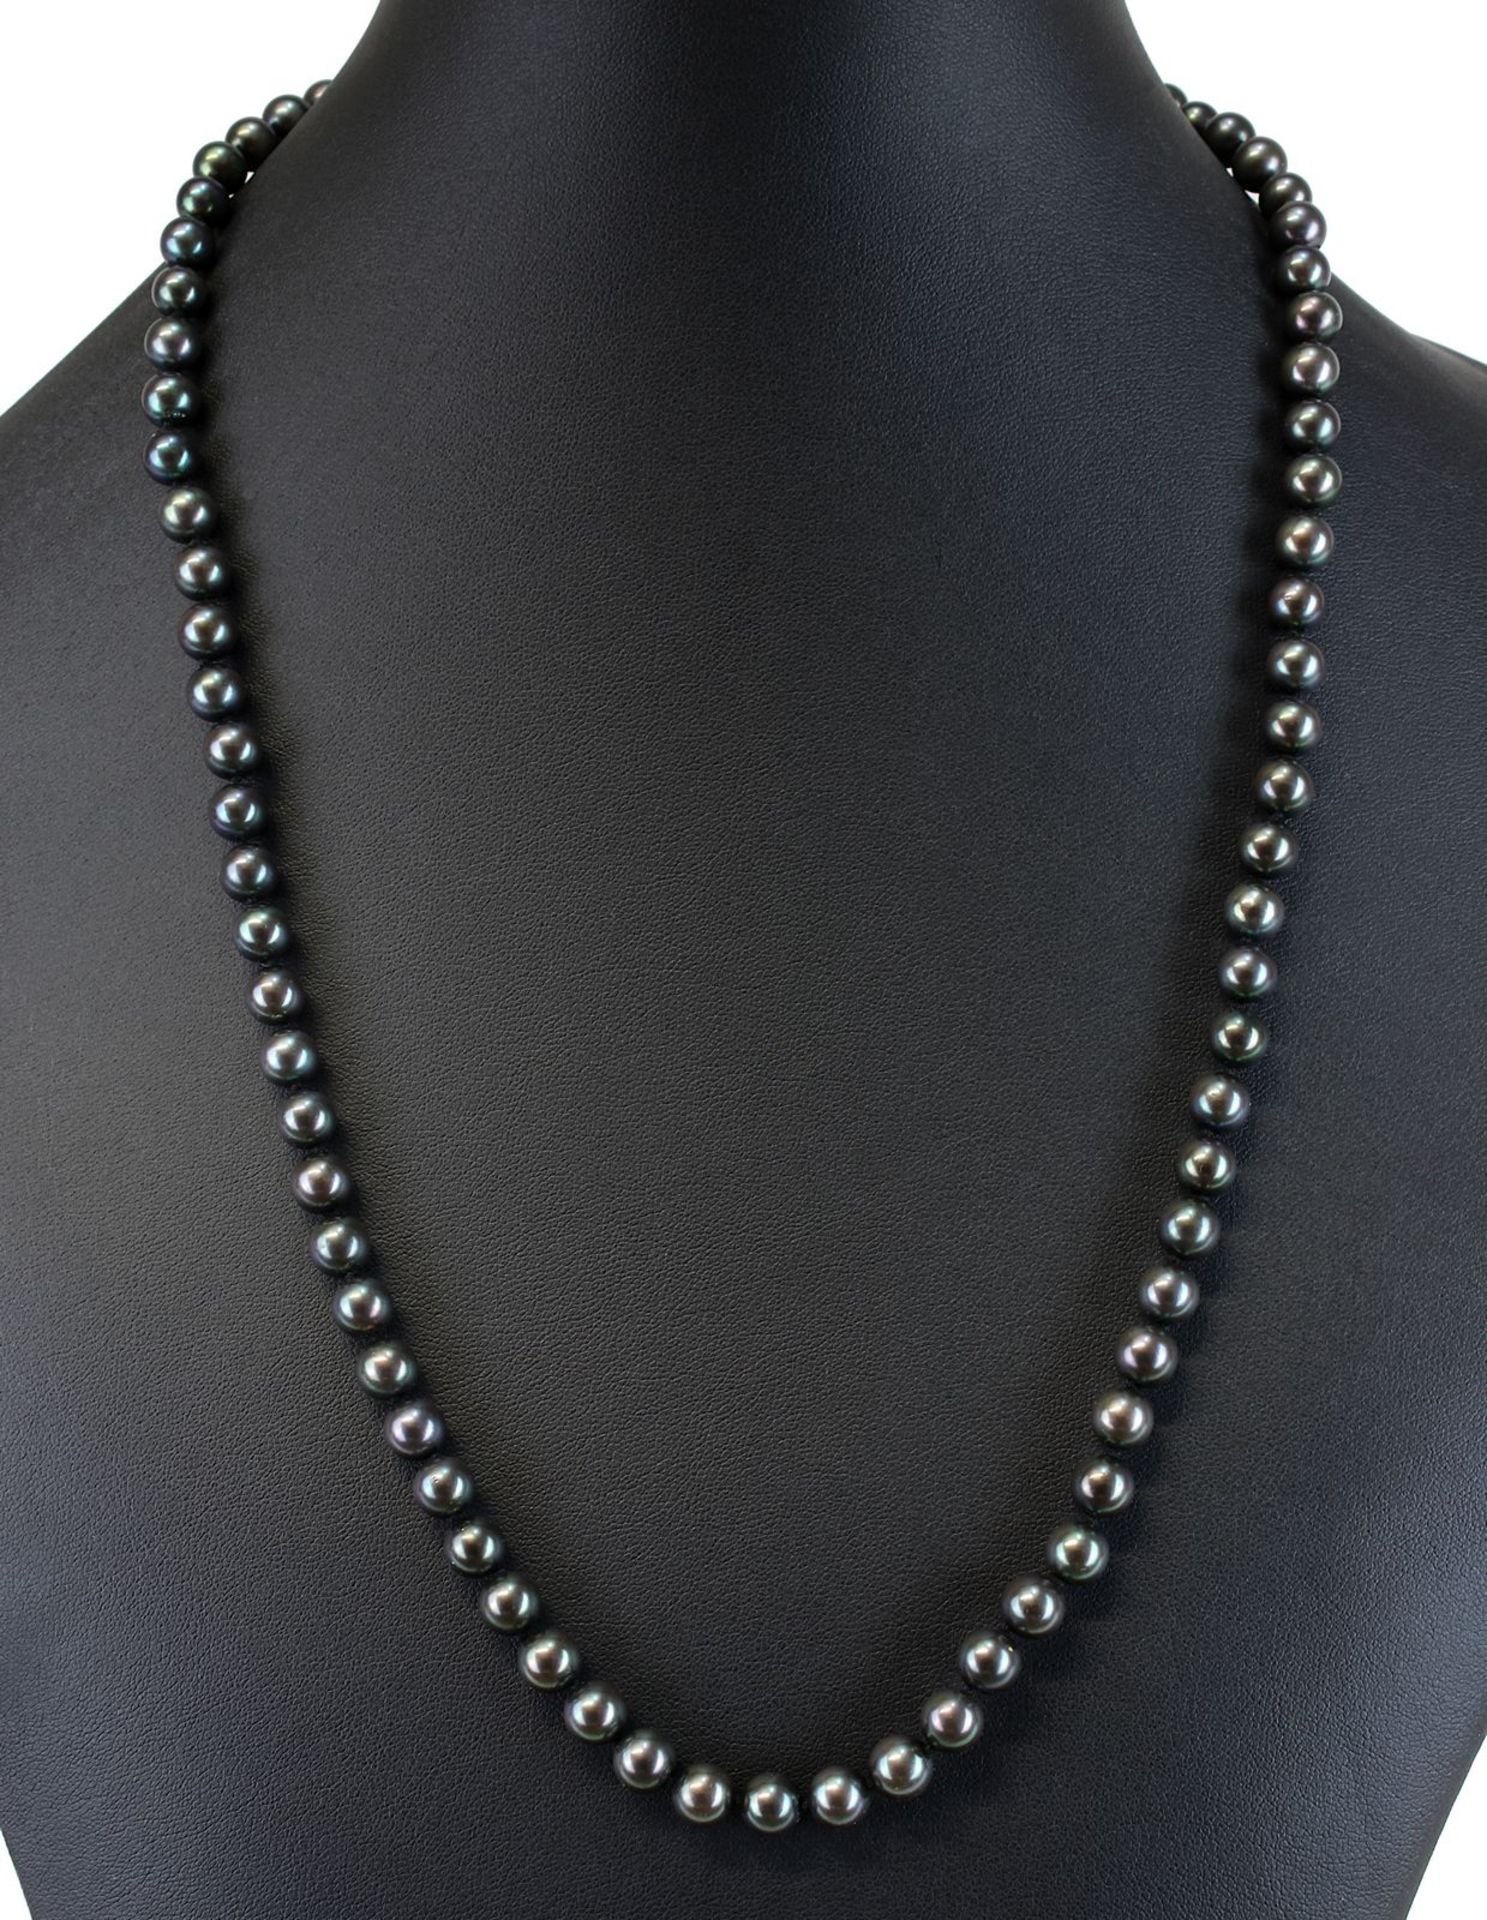 Schwarze Tahiti-Perlenkette, als Endloskette ohne Verschluss, Länge 60 cm, Perlen-Durchmesser 7